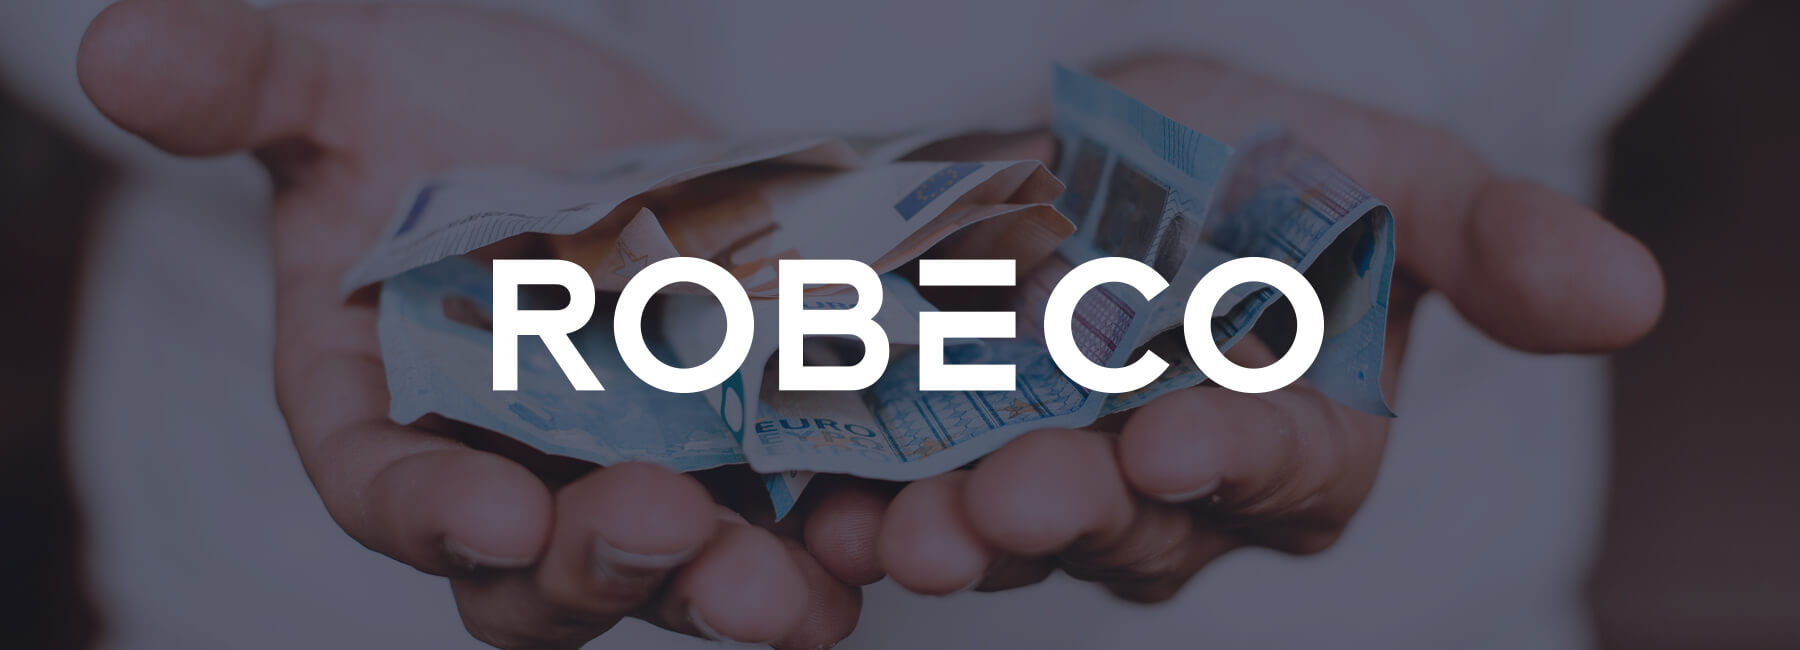 Robeco améliore l’expérience en ligne grâce aux commentaires clients